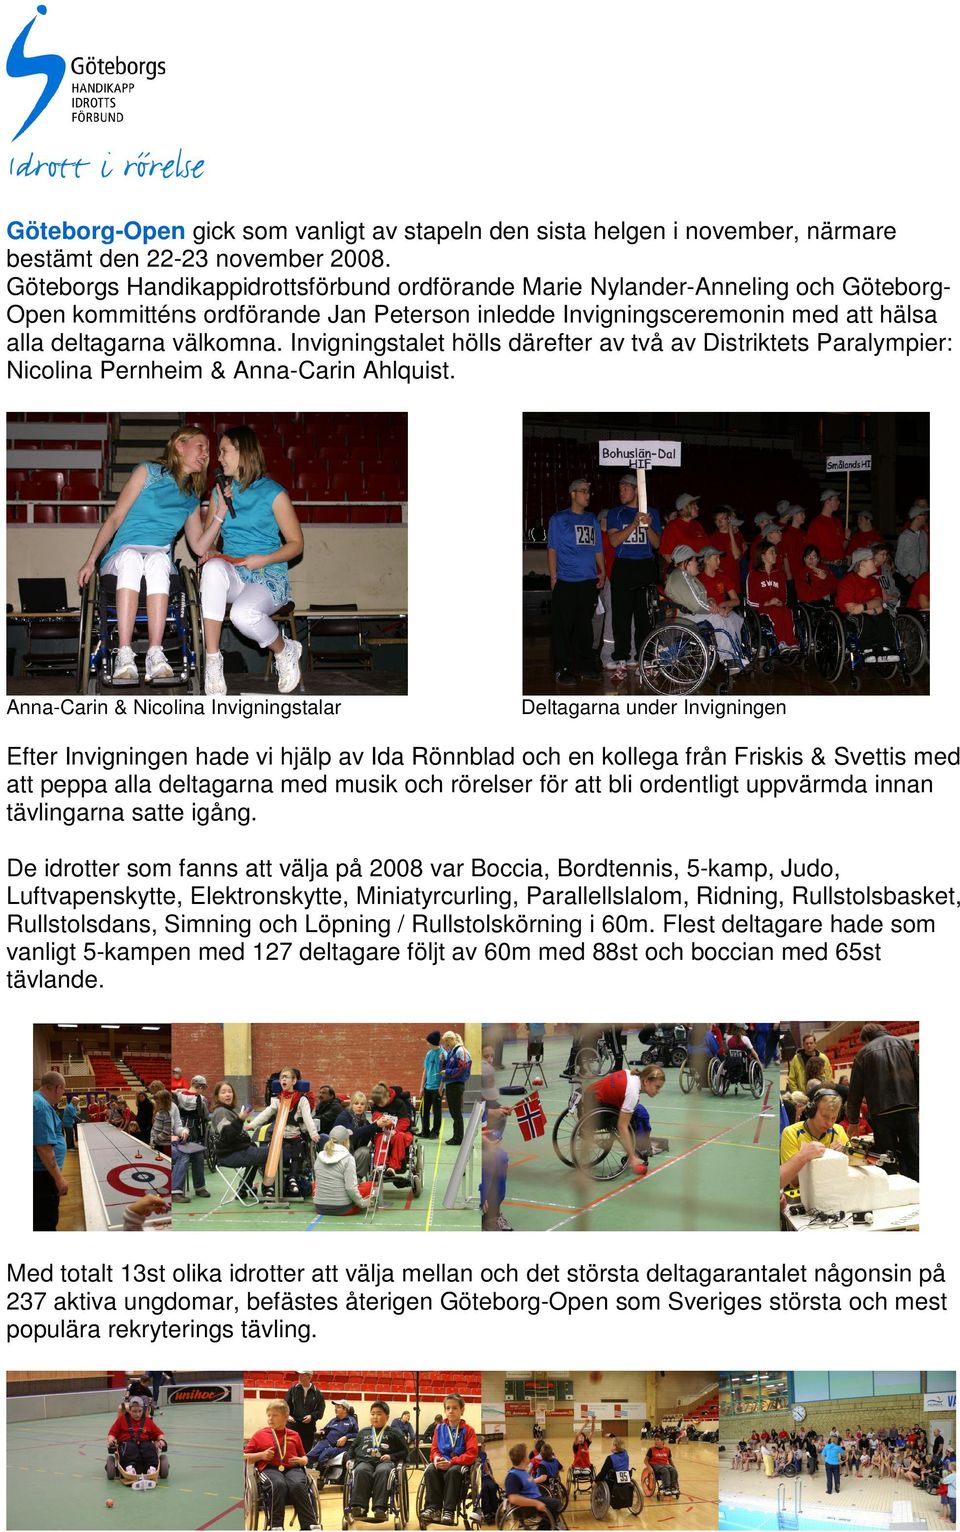 Invigningstalet hölls därefter av två av Distriktets Paralympier: Nicolina Pernheim & Anna-Carin Ahlquist.